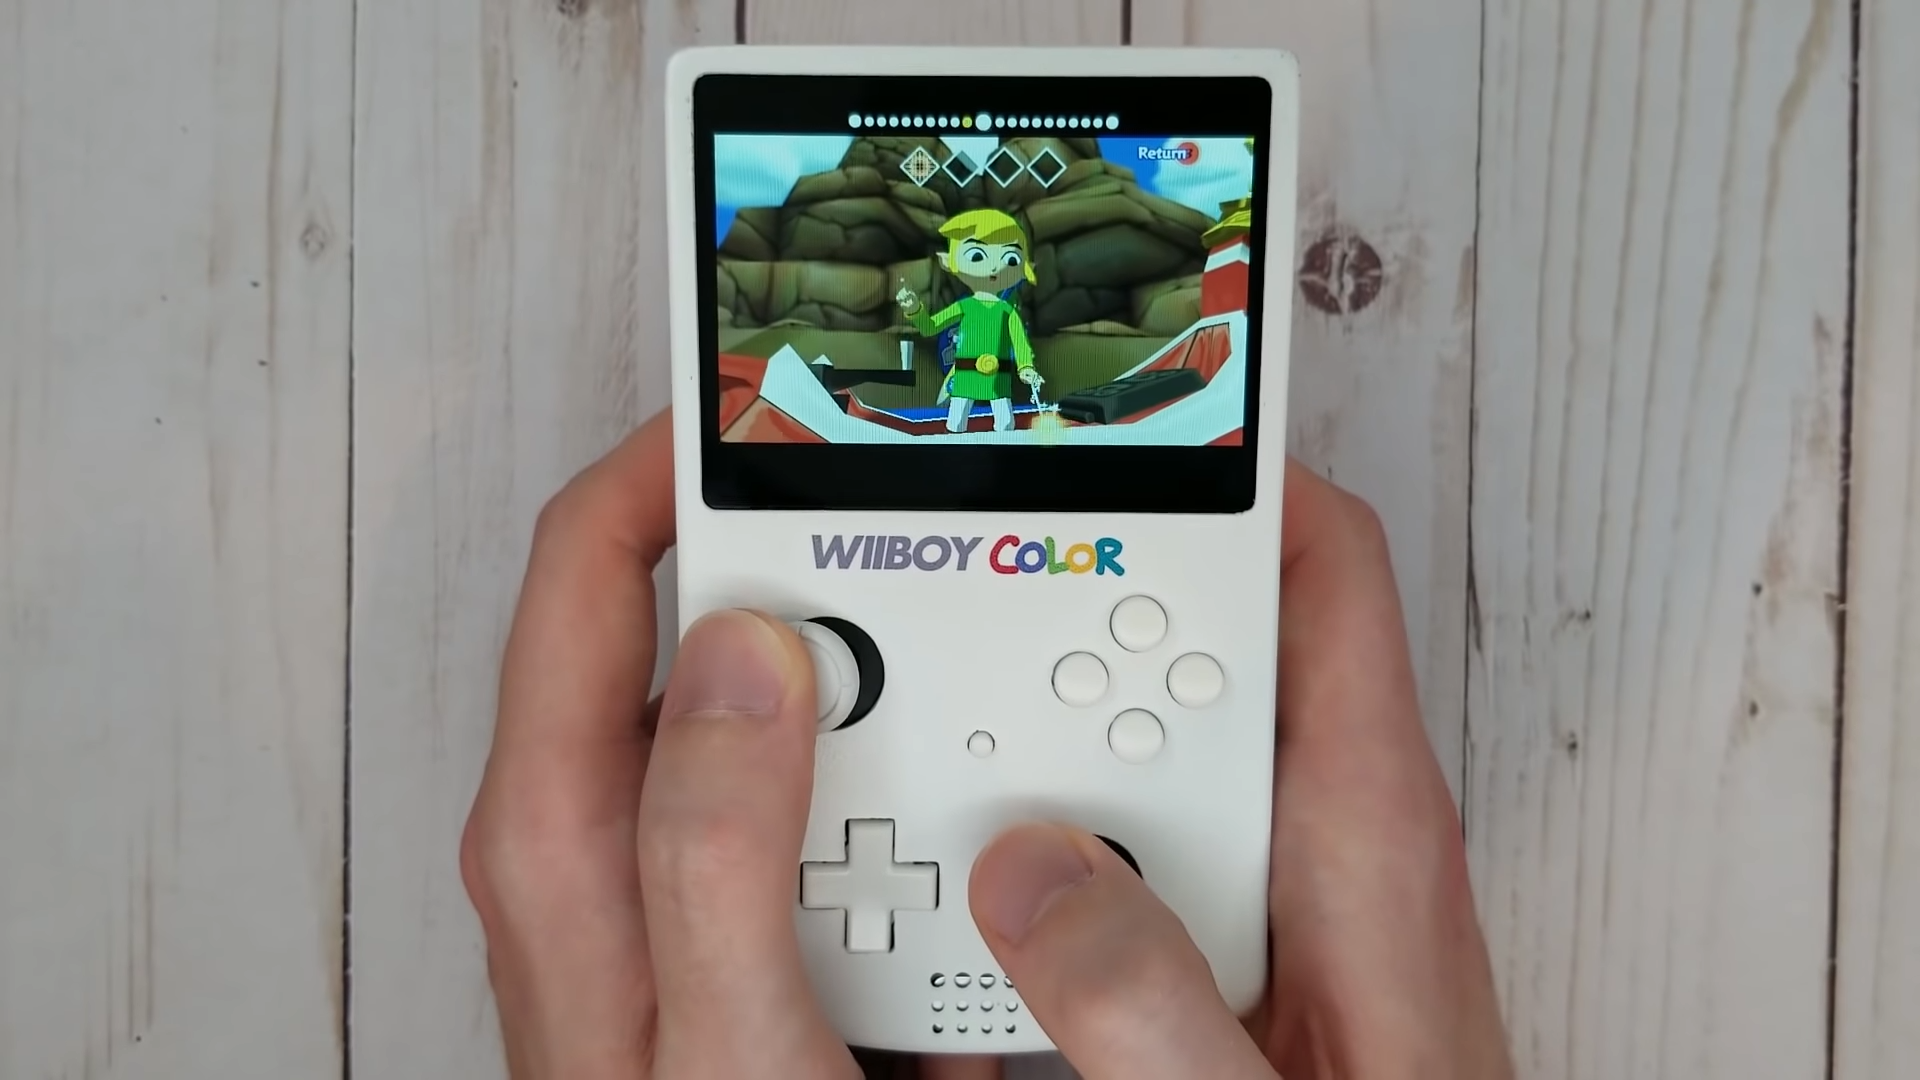 Dieser GameBoy Color ist eine tragbare Nintendo Wii